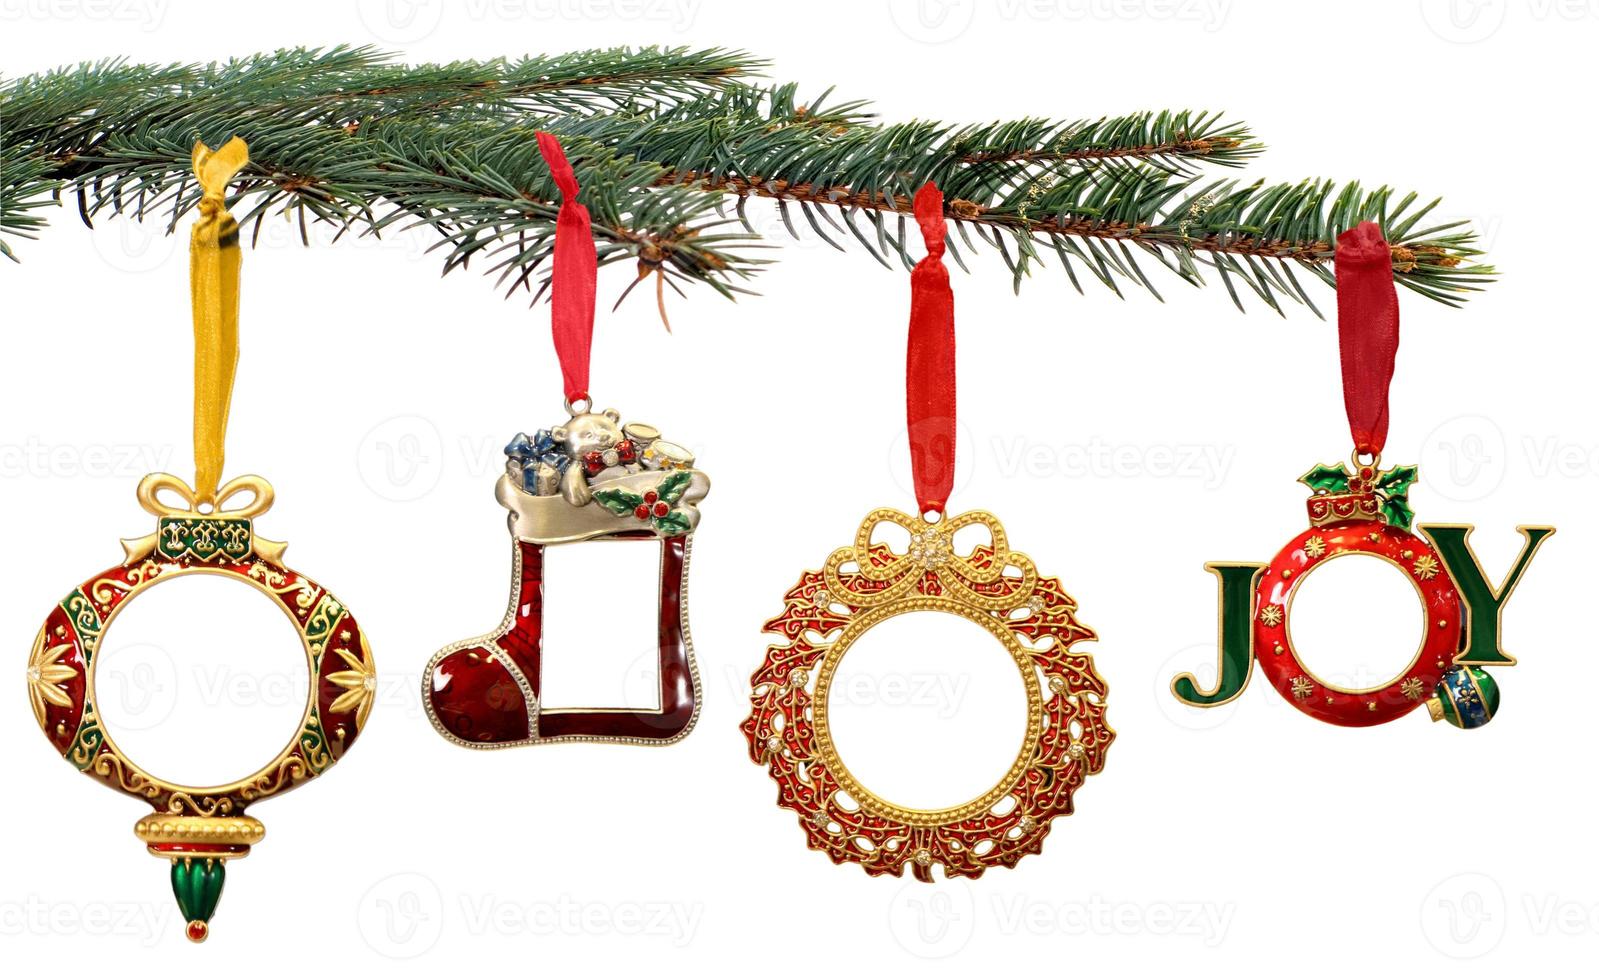 addobbi natalizi dipinti a mano appesi al ramo di un albero foto